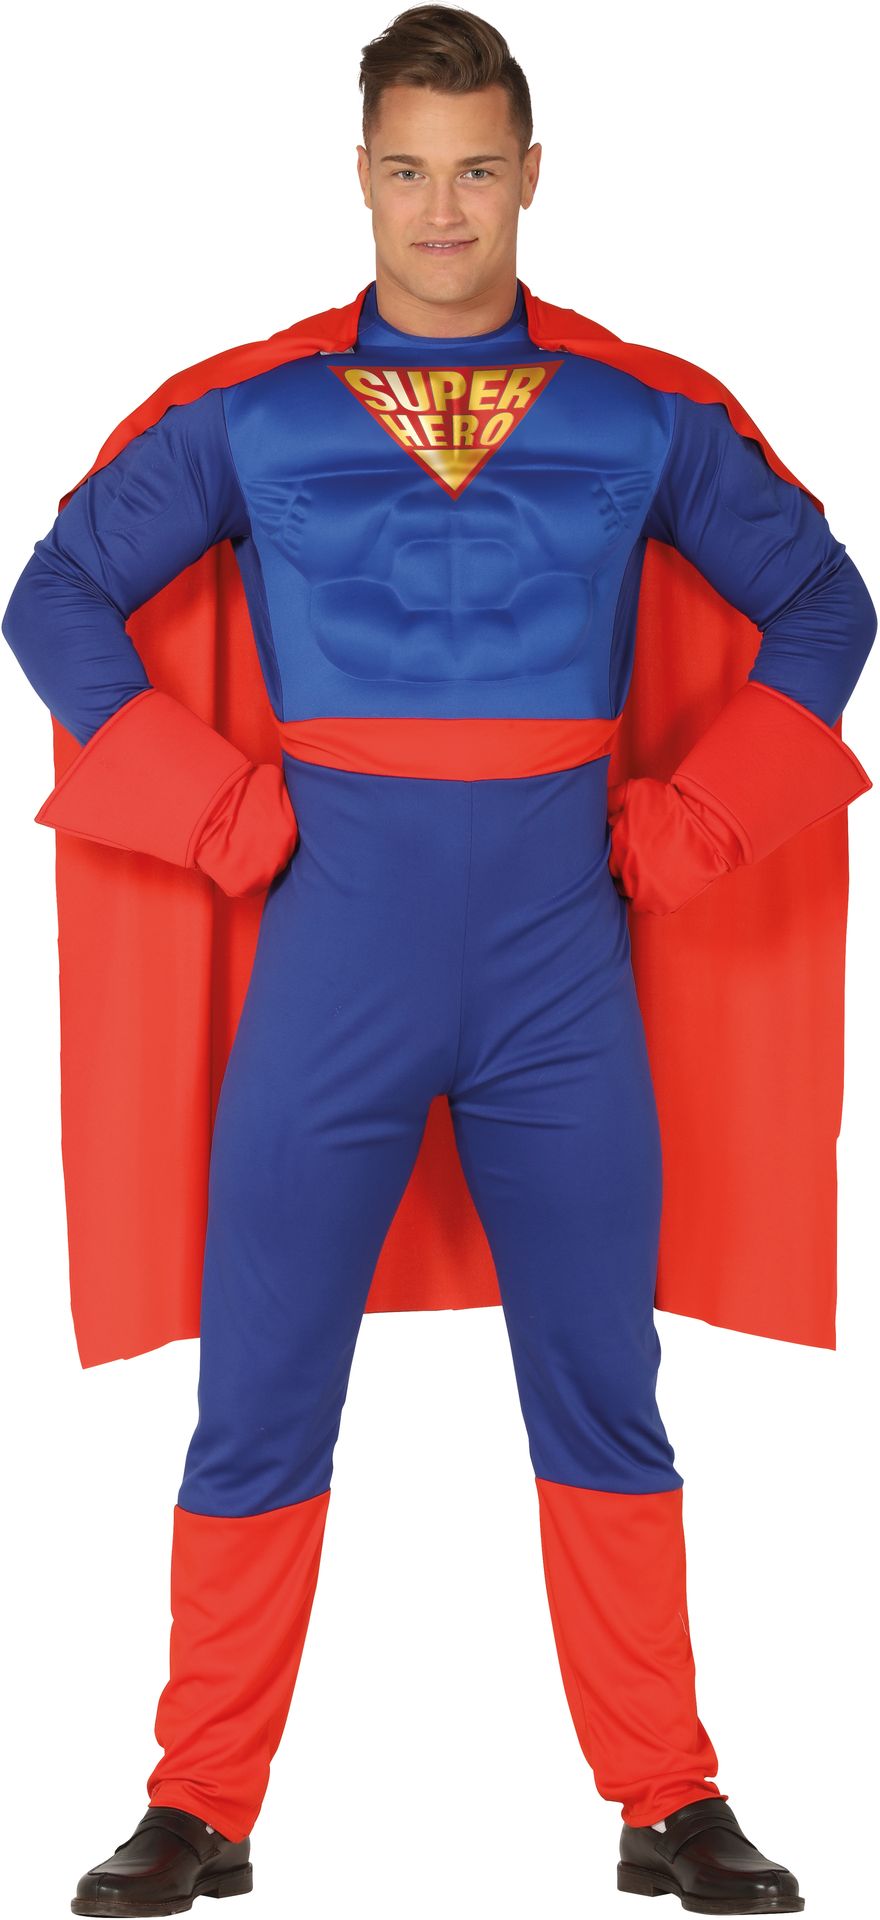 Gespierd superman kostuum mannen